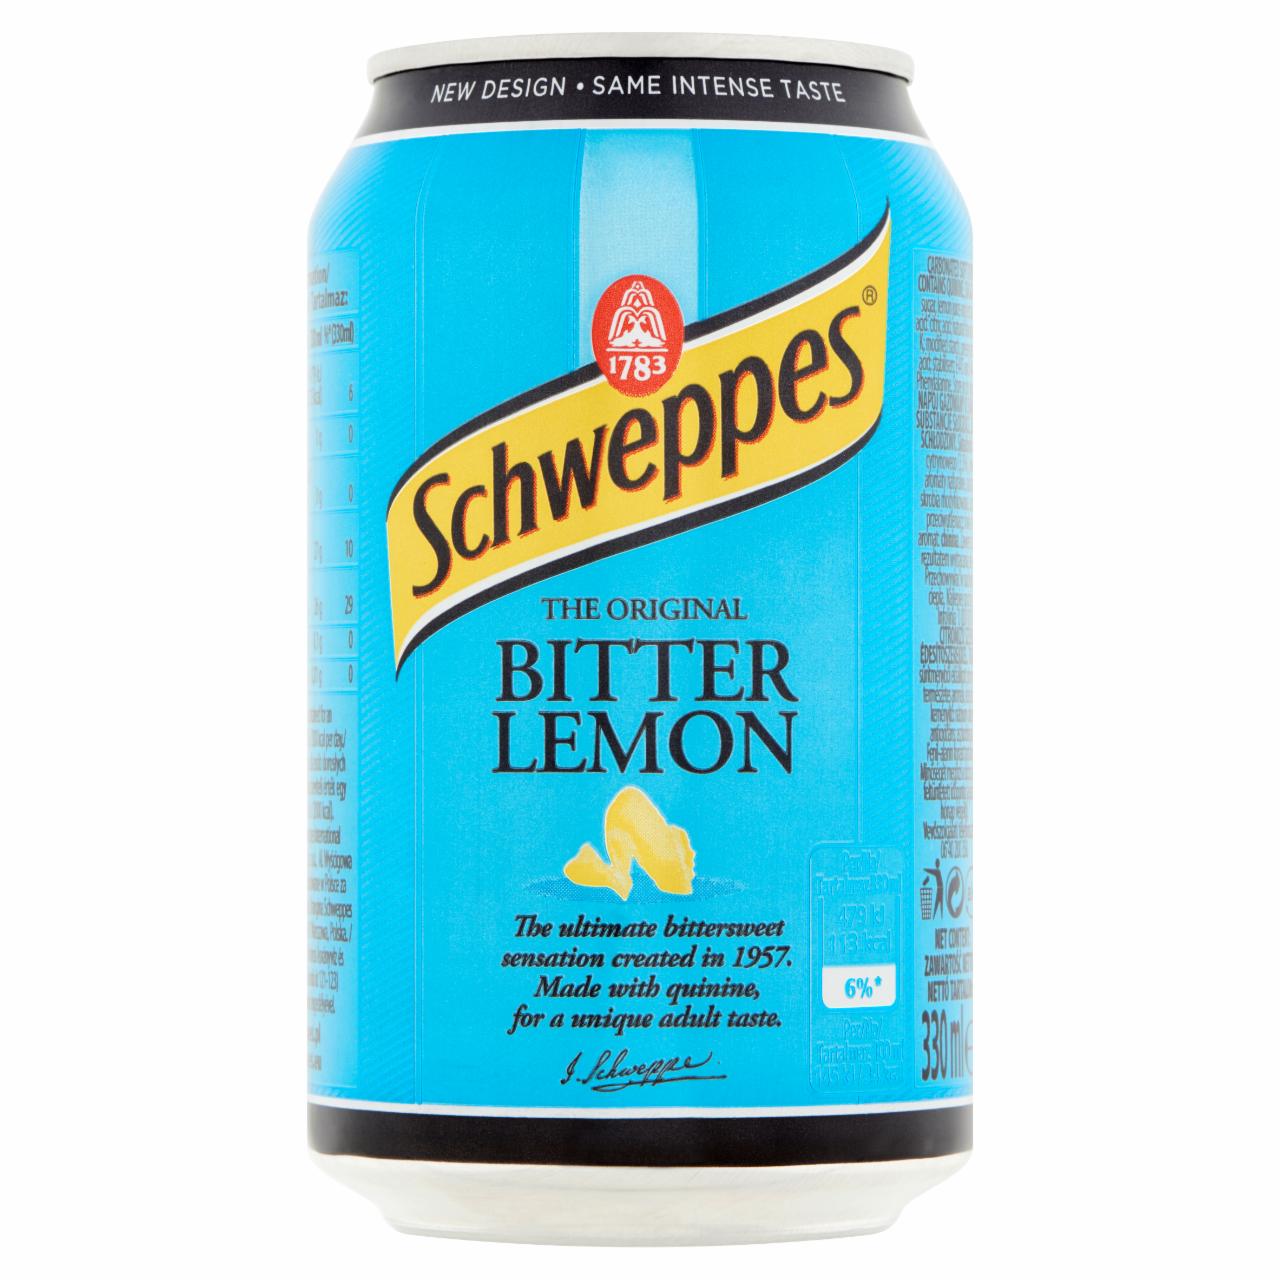 Képek - Schweppes Bitter Lemon citromízű szénsavas üdítőital cukorral és édesítőszerekkel 330 ml